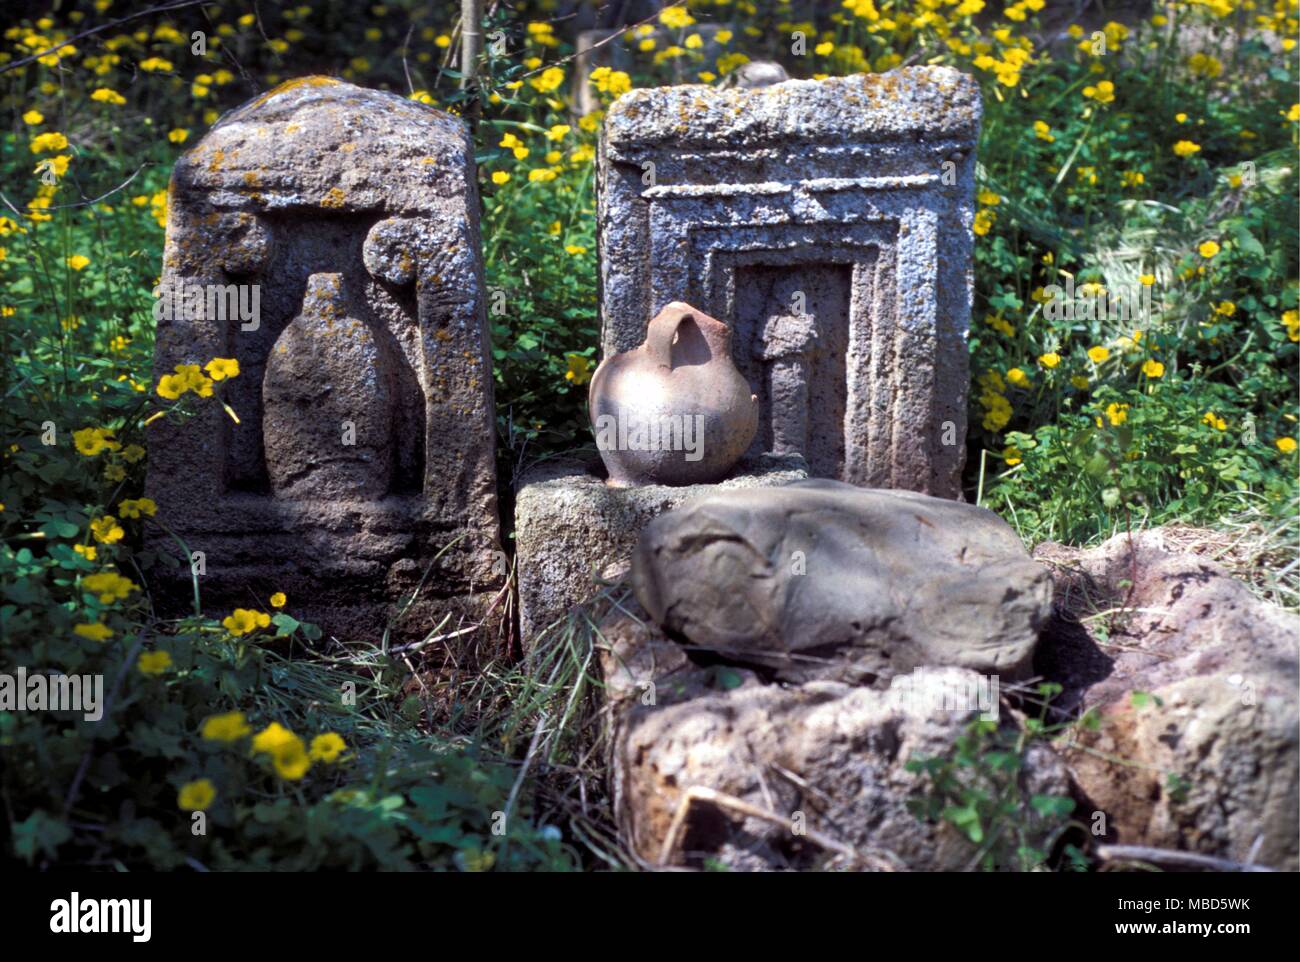 Tunesien Tophet Gräber und Denkmäler in der TOPHET in der Nähe von Carthage (moderne Tunis), in dem die Grabstätten der alten geschichtsträchtigen Sehenswürdigkeiten Göttern geopfert zusammen mit einem Wasser gebunden Hypogeum beibehalten wird Stockfoto